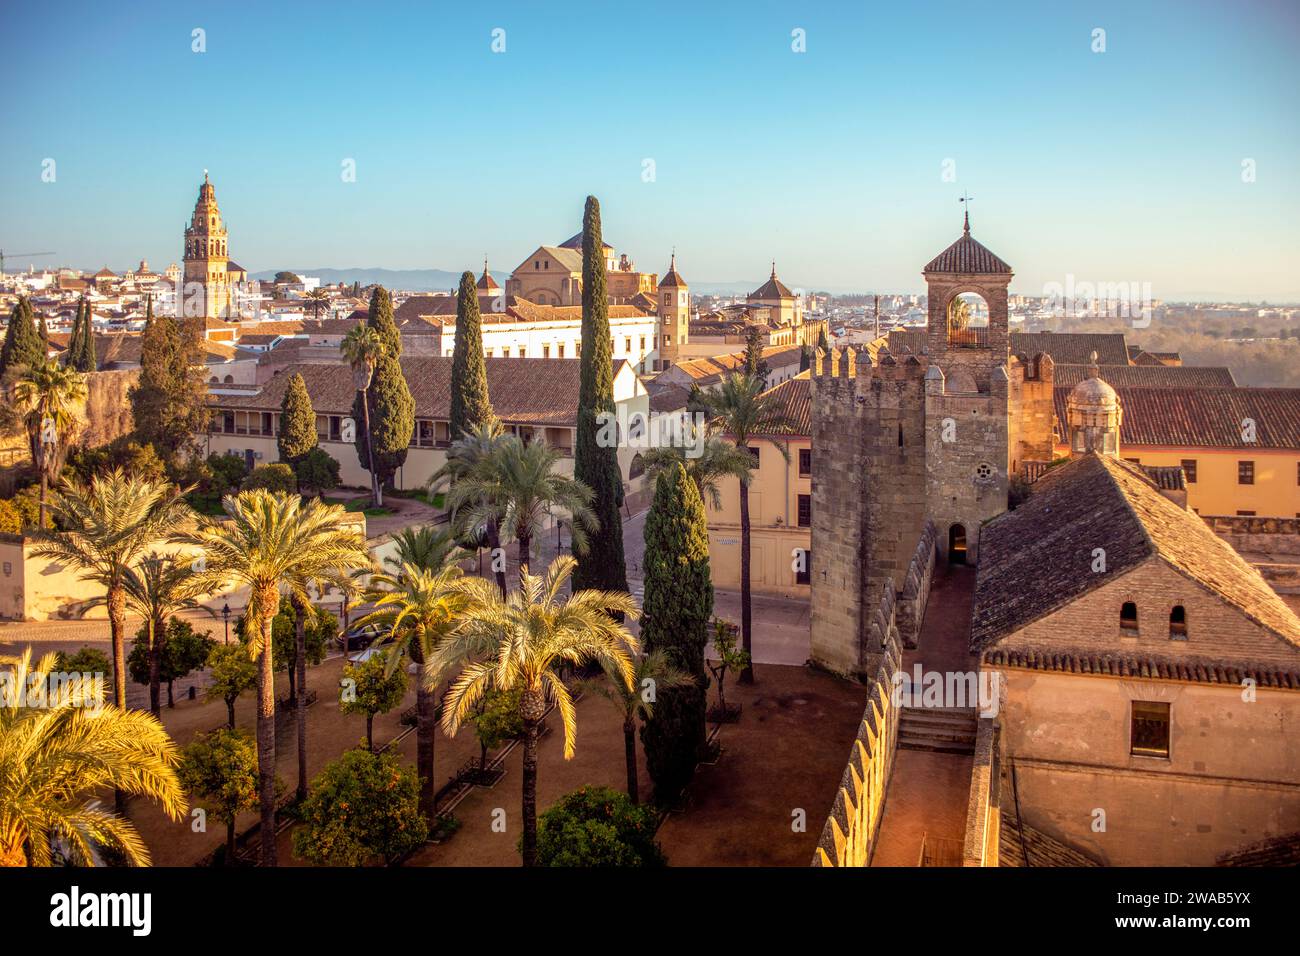 Vista della città di Córdoba, Andalusia, Spagna, Patrimonio dell'Umanità, da una delle torri del Alcázar de los Reyes Cristianos Foto Stock